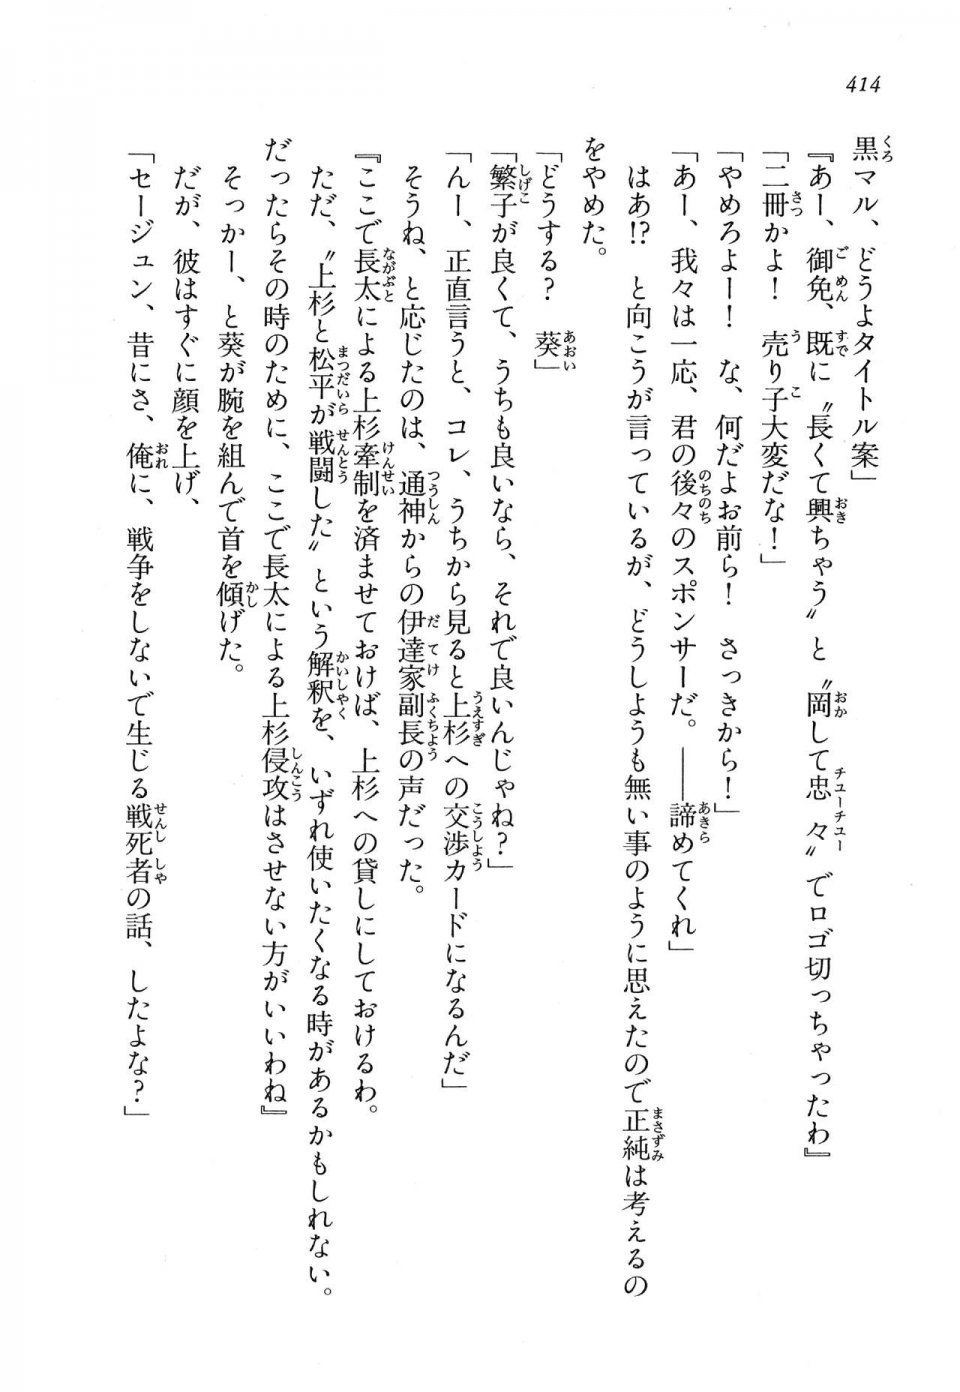 Kyoukai Senjou no Horizon LN Vol 16(7A) - Photo #414